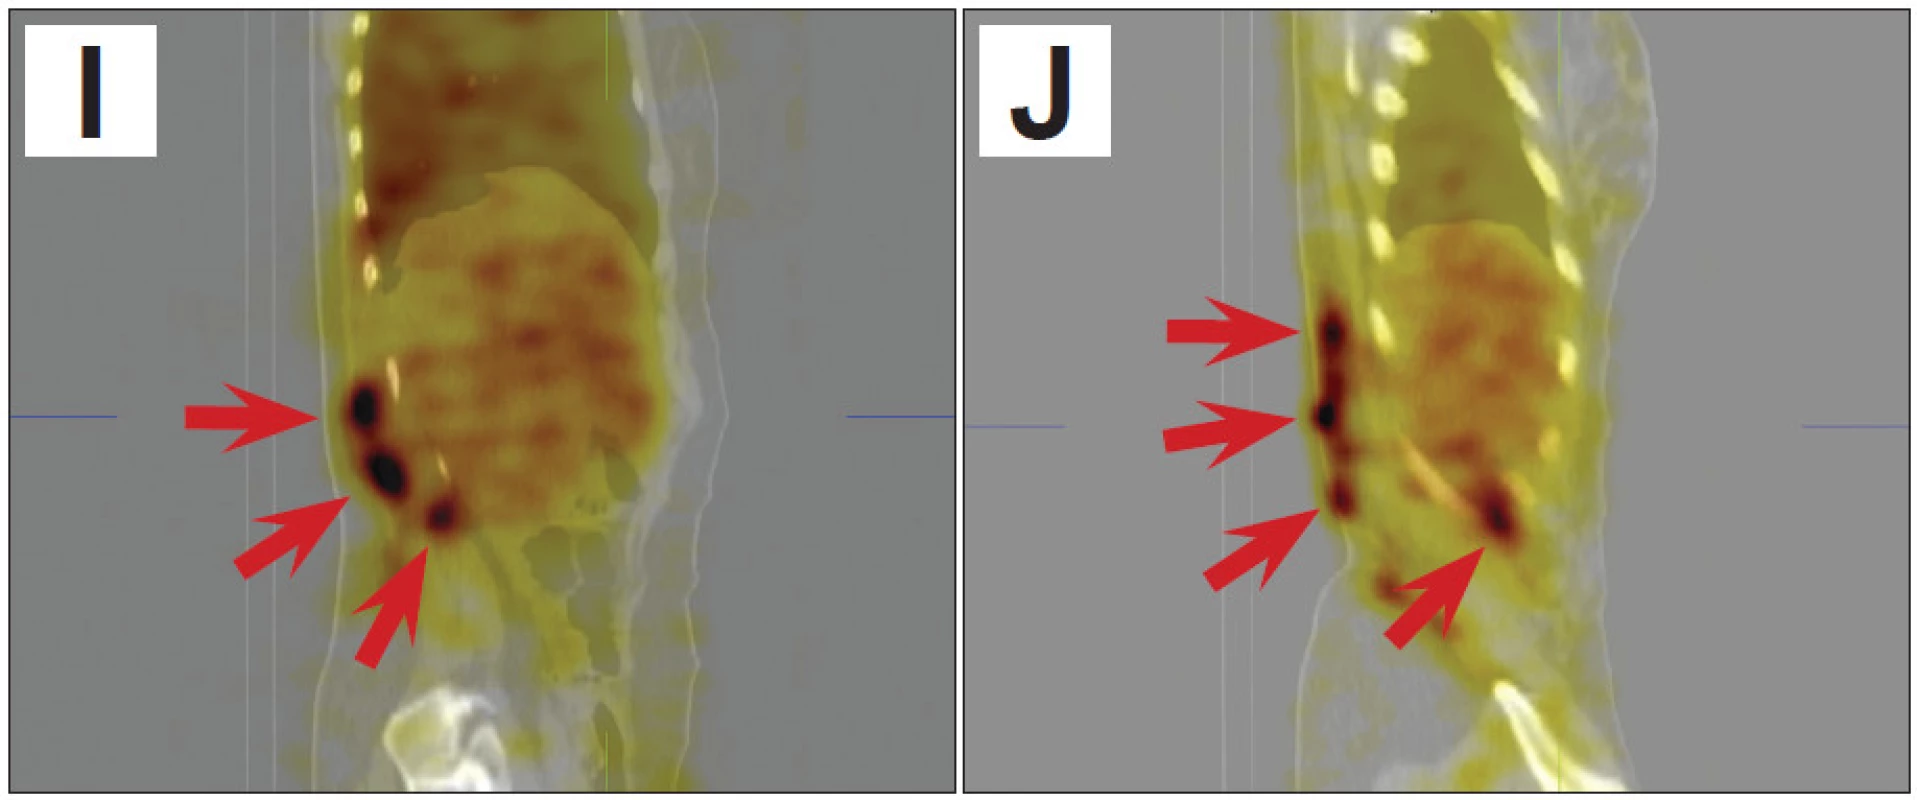 SPECT/CT obrazy trupu umožní přesnější posouzení lokalizace a rozsahu hemangiomu (šipky).
A 3D obraz v předním pohledu
B 3D obraz v pravém bočním pohledu
C 3D obraz v pravém zadním šikmém pohledu
D řez v transverzální rovině v dolní části hrudníku
E řez v transverzální rovině v úrovni beder
F řez v transverzální rovině v úrovni pánve
G řez ve frontální rovině dorzálně v oblasti páteře
H řez ve frontální rovině dorzálně v oblasti zadní stěny trupu
I řez v sagitální rovině parasagitálně od střední čáry vpravo
J řez v sagitální rovině laterálně vpravo